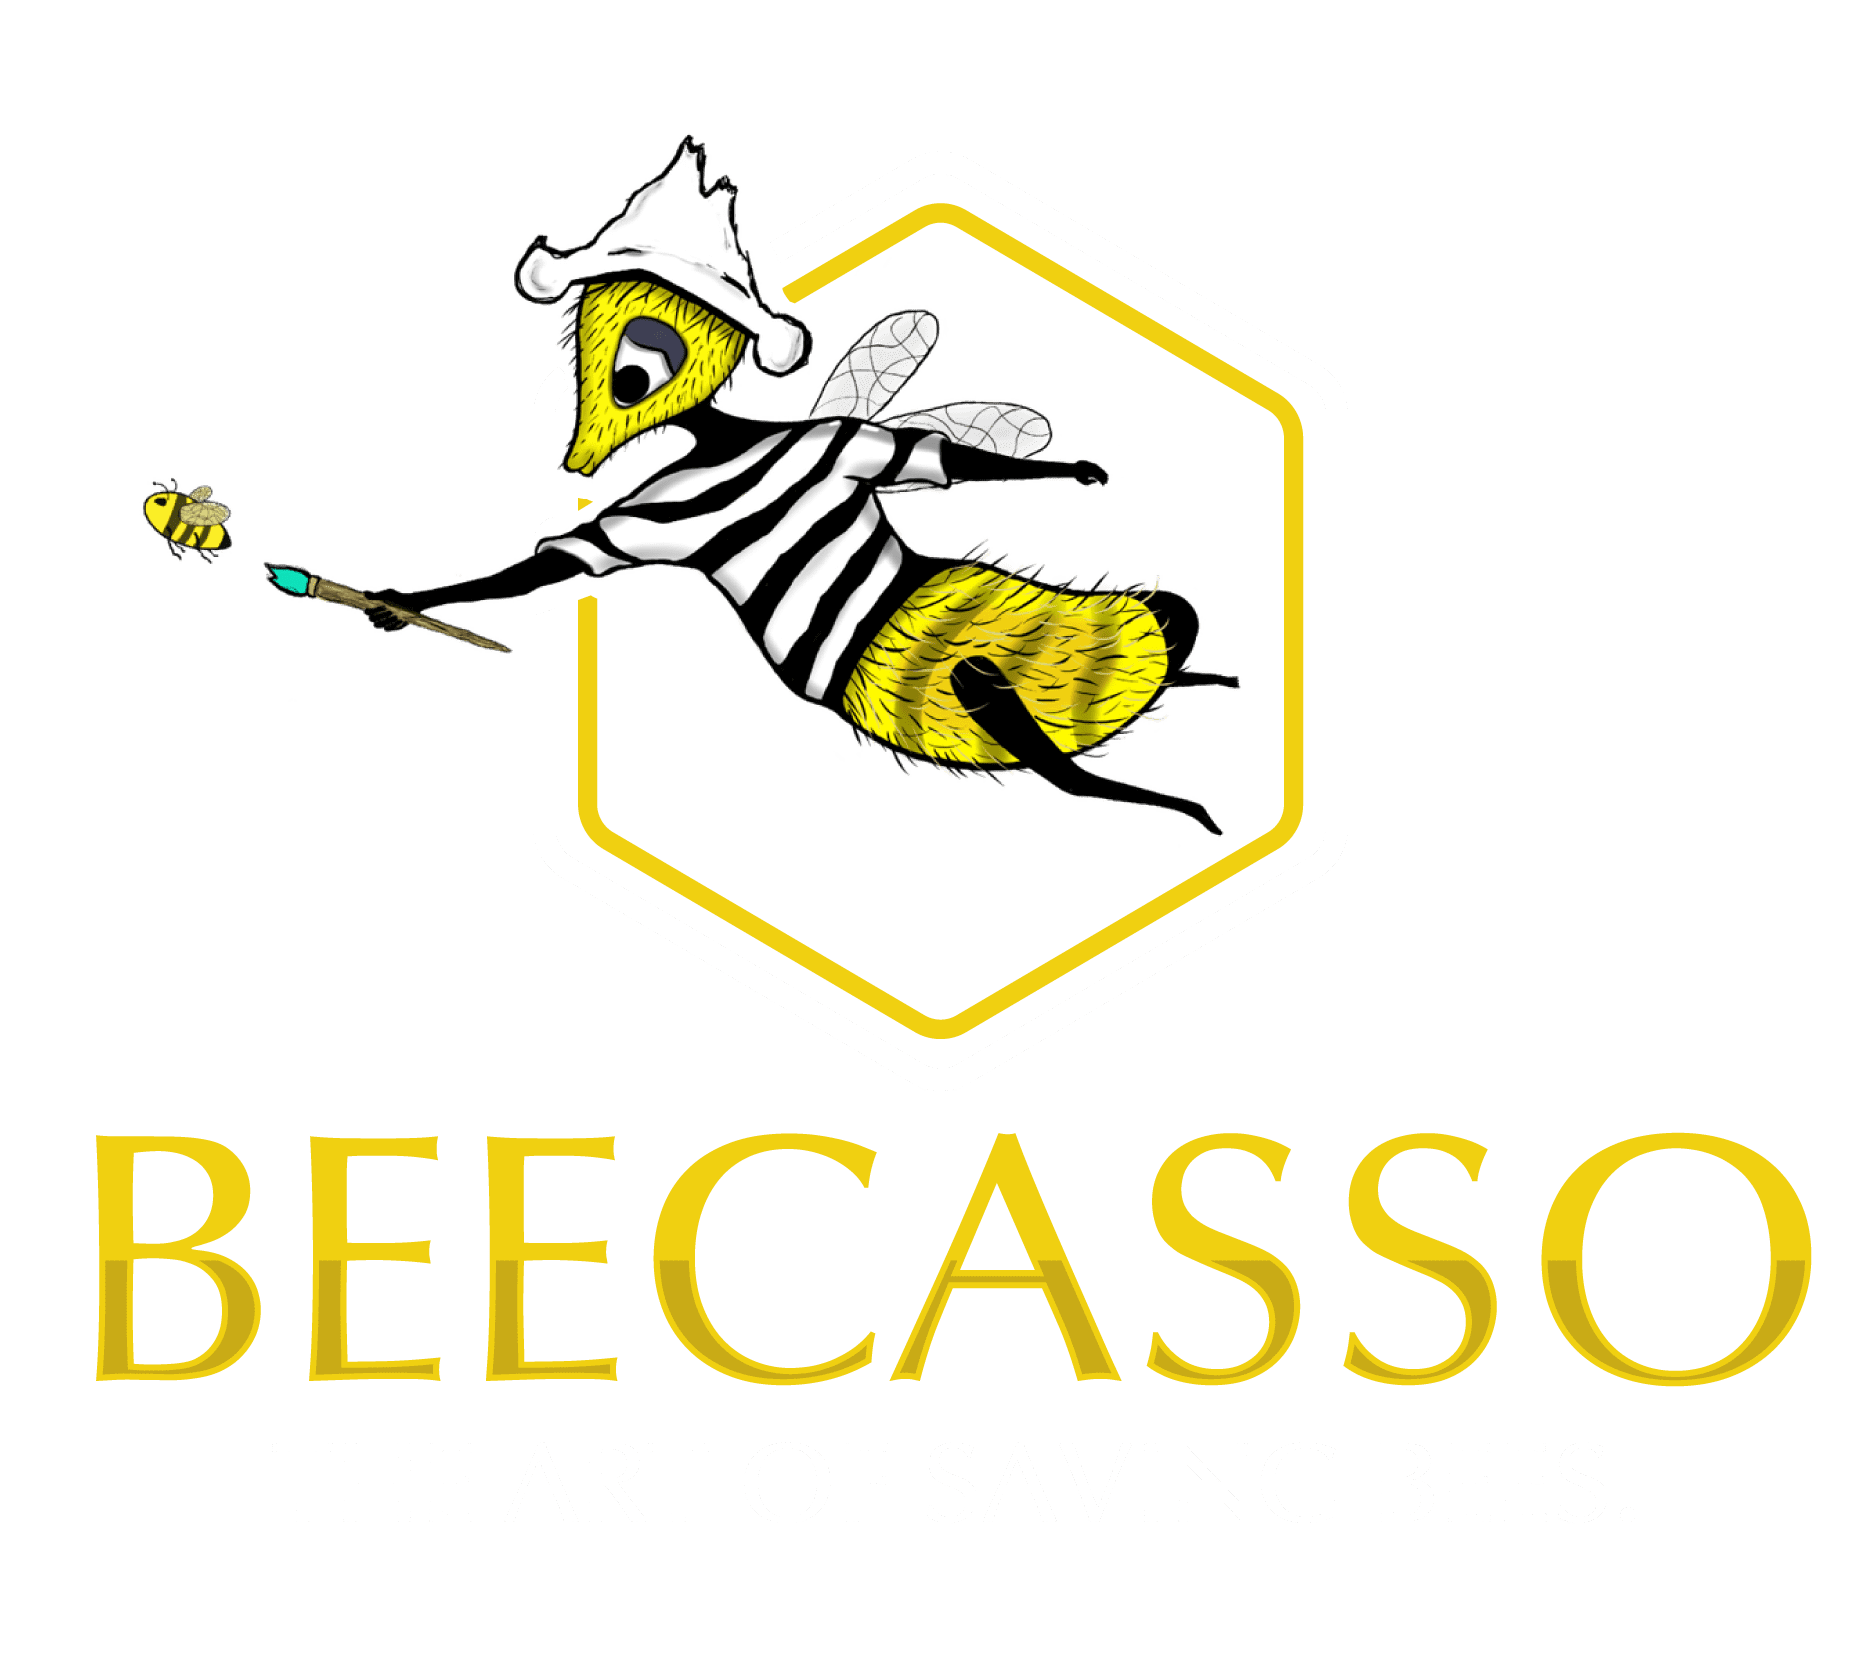 Beecasso